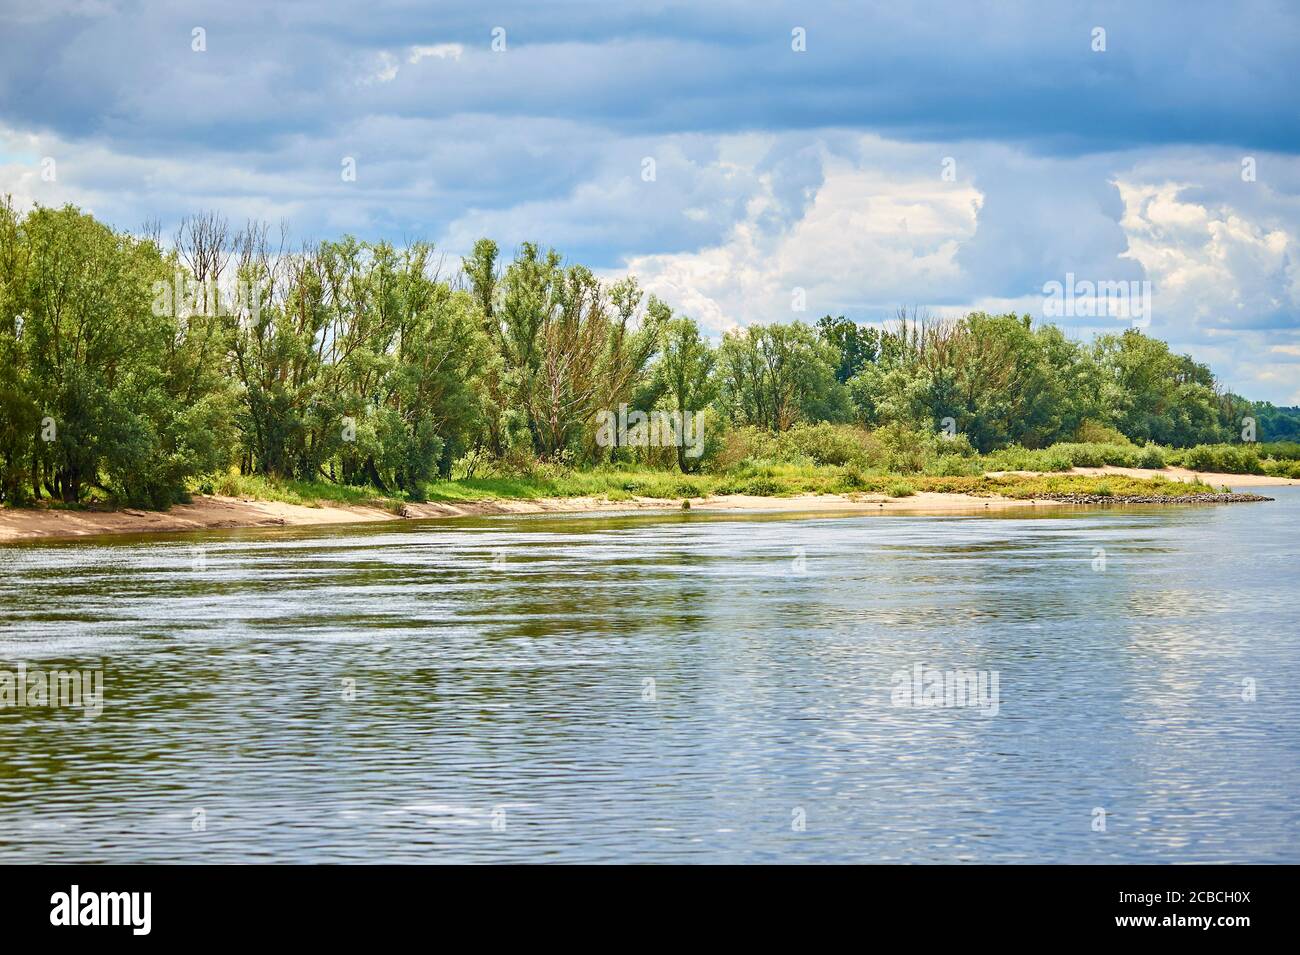 Une forêt de plaines inondables sur les rives de la rivière dans les plaines inondables de la rivière Elbe Banque D'Images